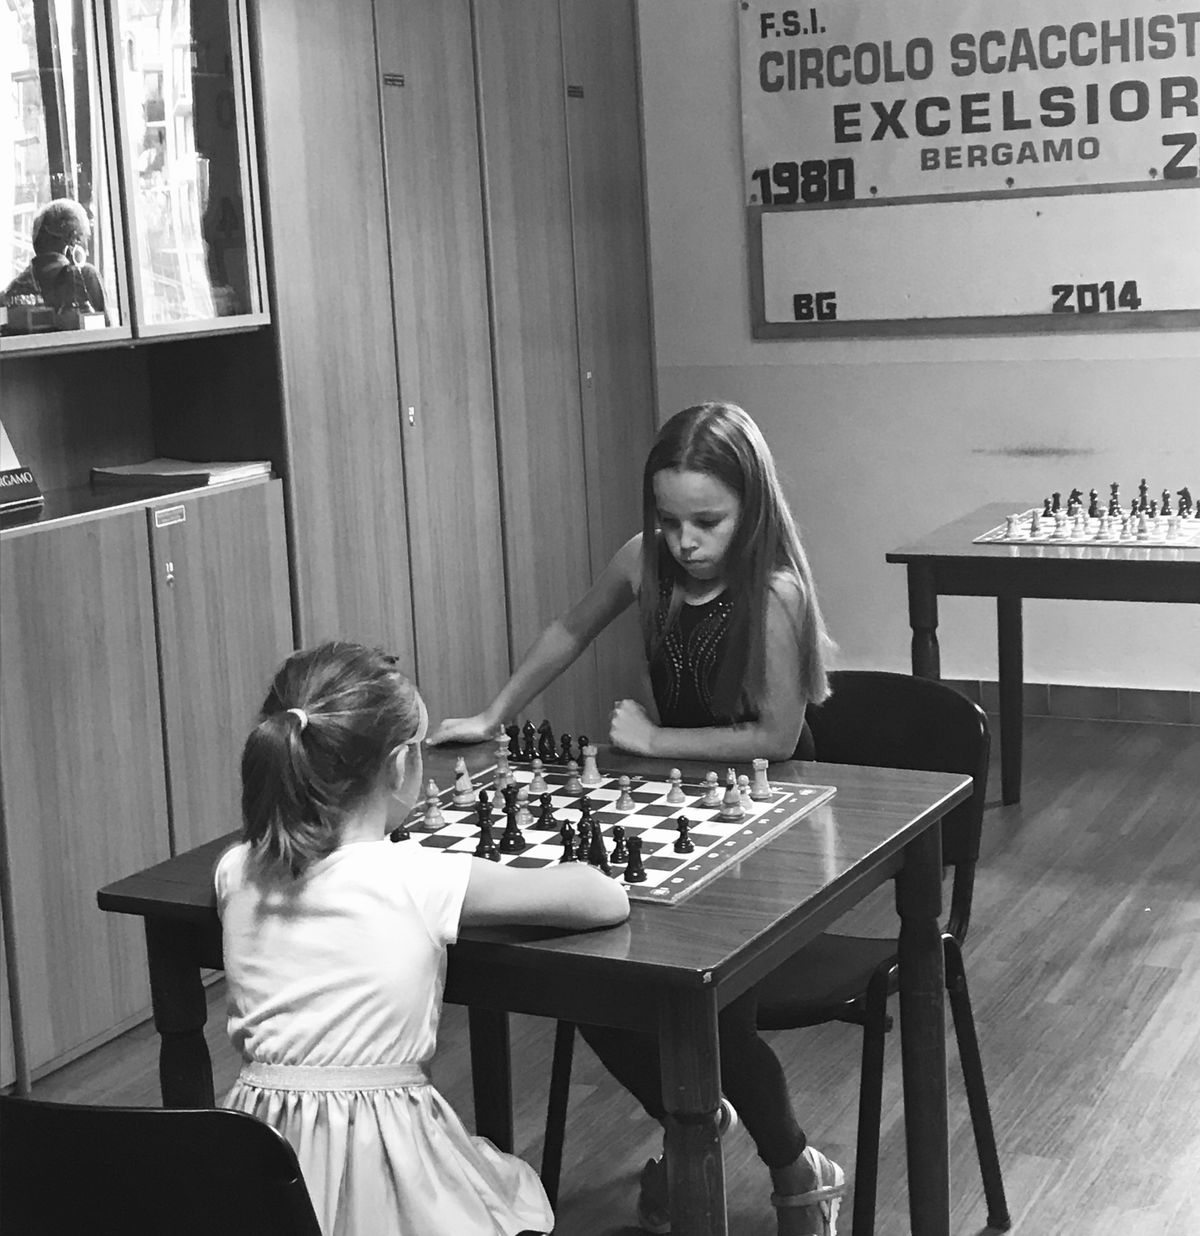 Ilzes meita labi pārzina šaha spēli